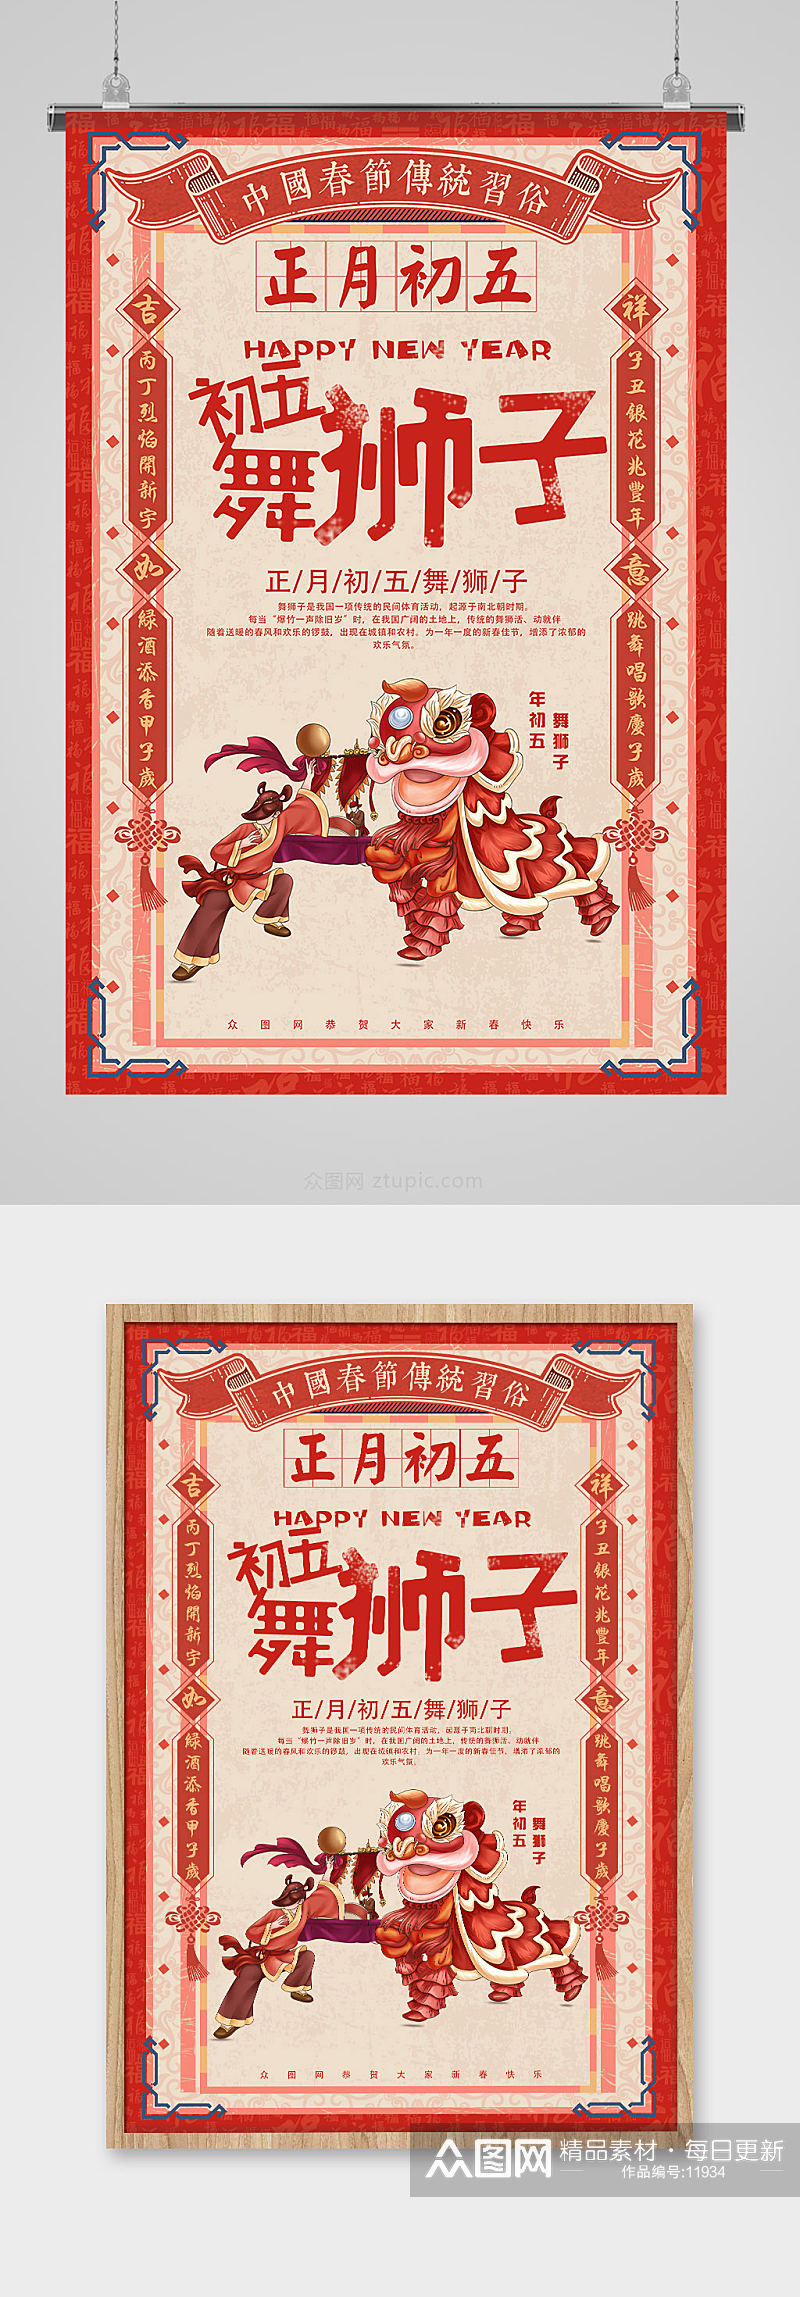 手绘中式民俗新年海报设计素材